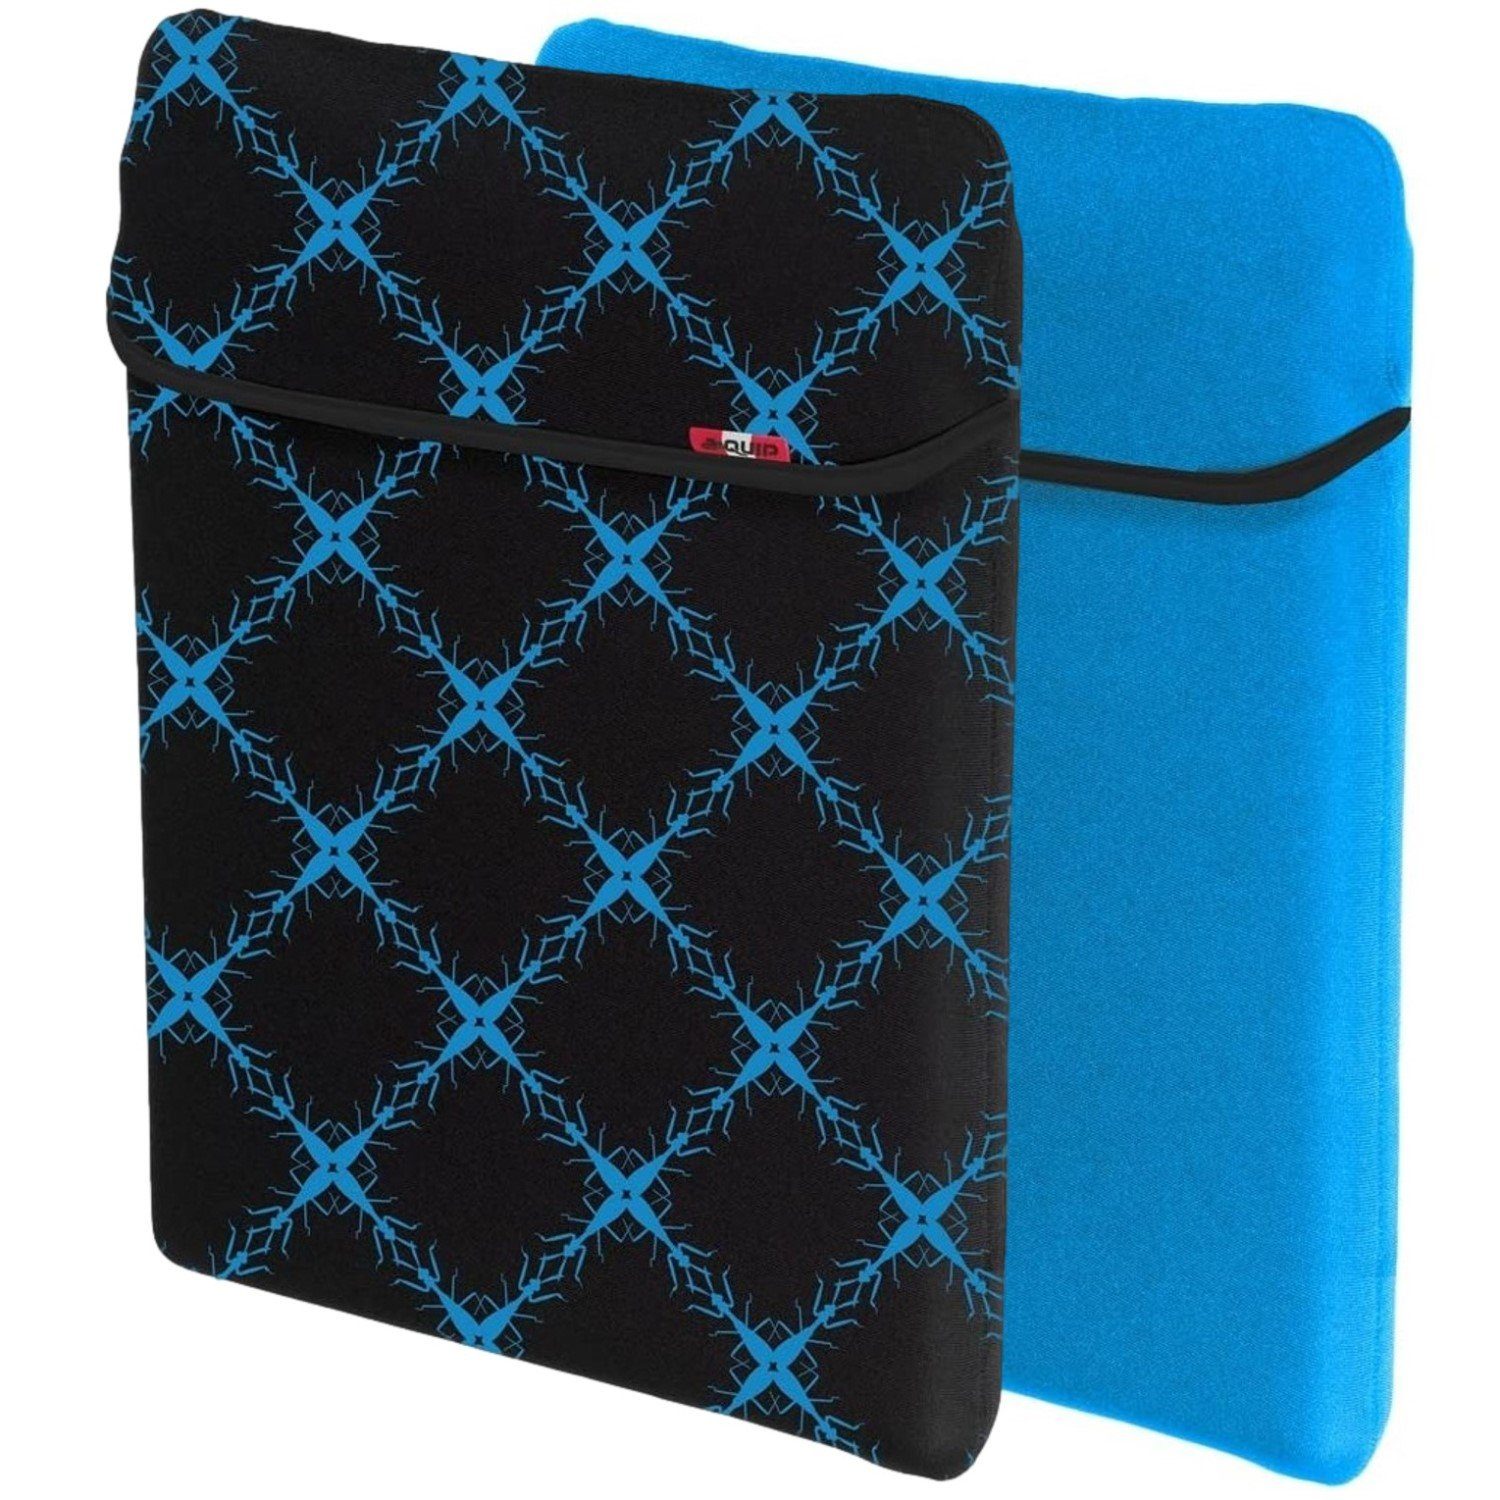 aha Laptoptasche Notebook Cover Tasche Schutz-Hülle Case Etui, passend für  Notebook und Tablet PC 13" 13,3" 13,5" 14" 14,1" Zoll